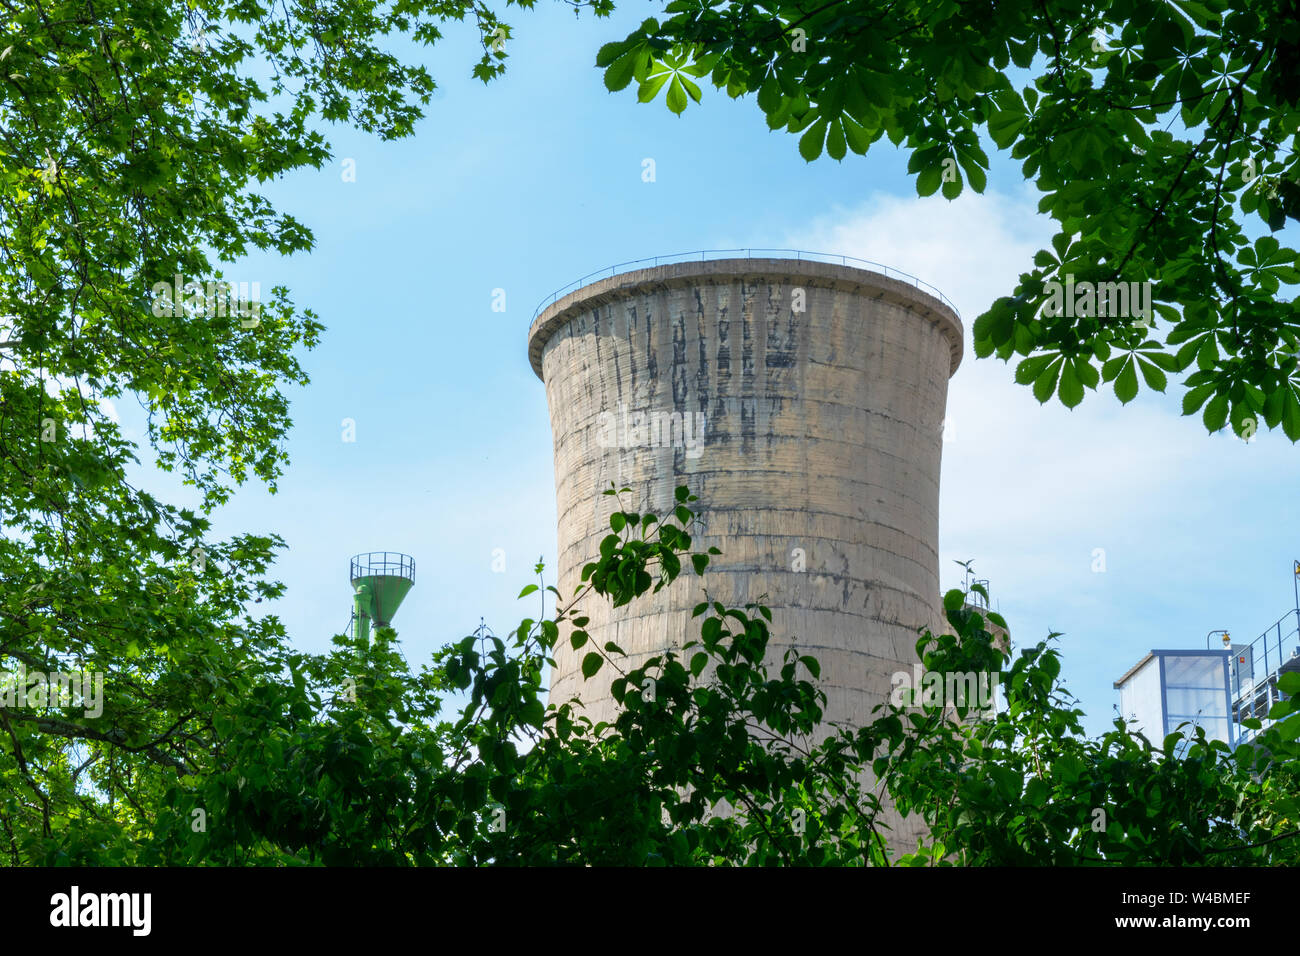 La tour en béton de l'usine d'alimentation cachée parmi la végétation des arbres vert Banque D'Images